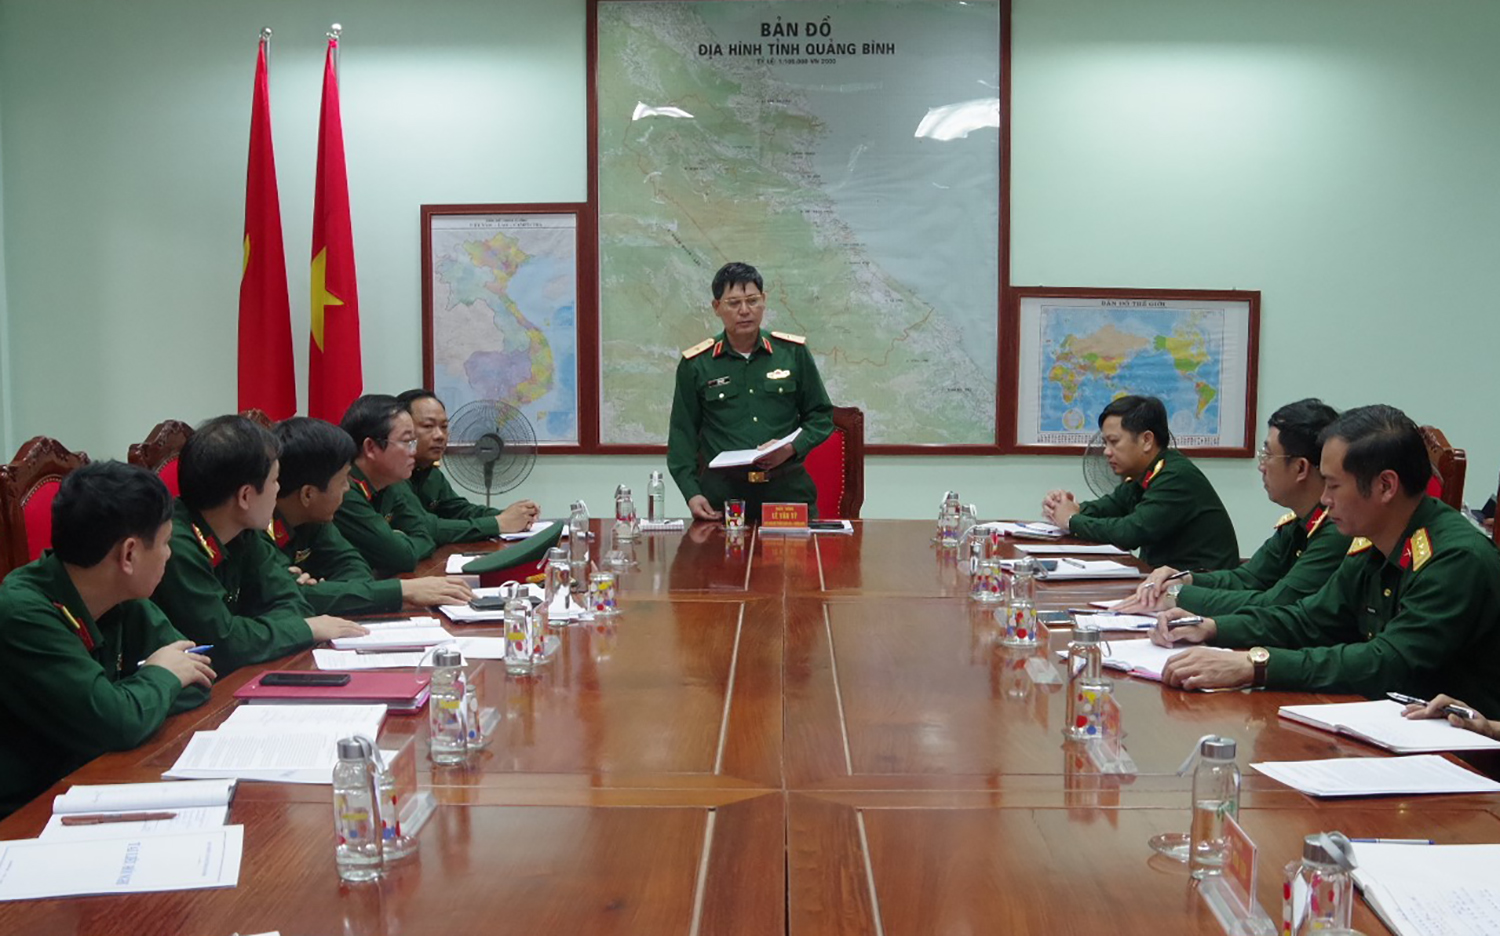 Thiếu tướng Lê Văn Vỹ, Phó tham mưu trưởng Quân khu kết luận kiểm tra